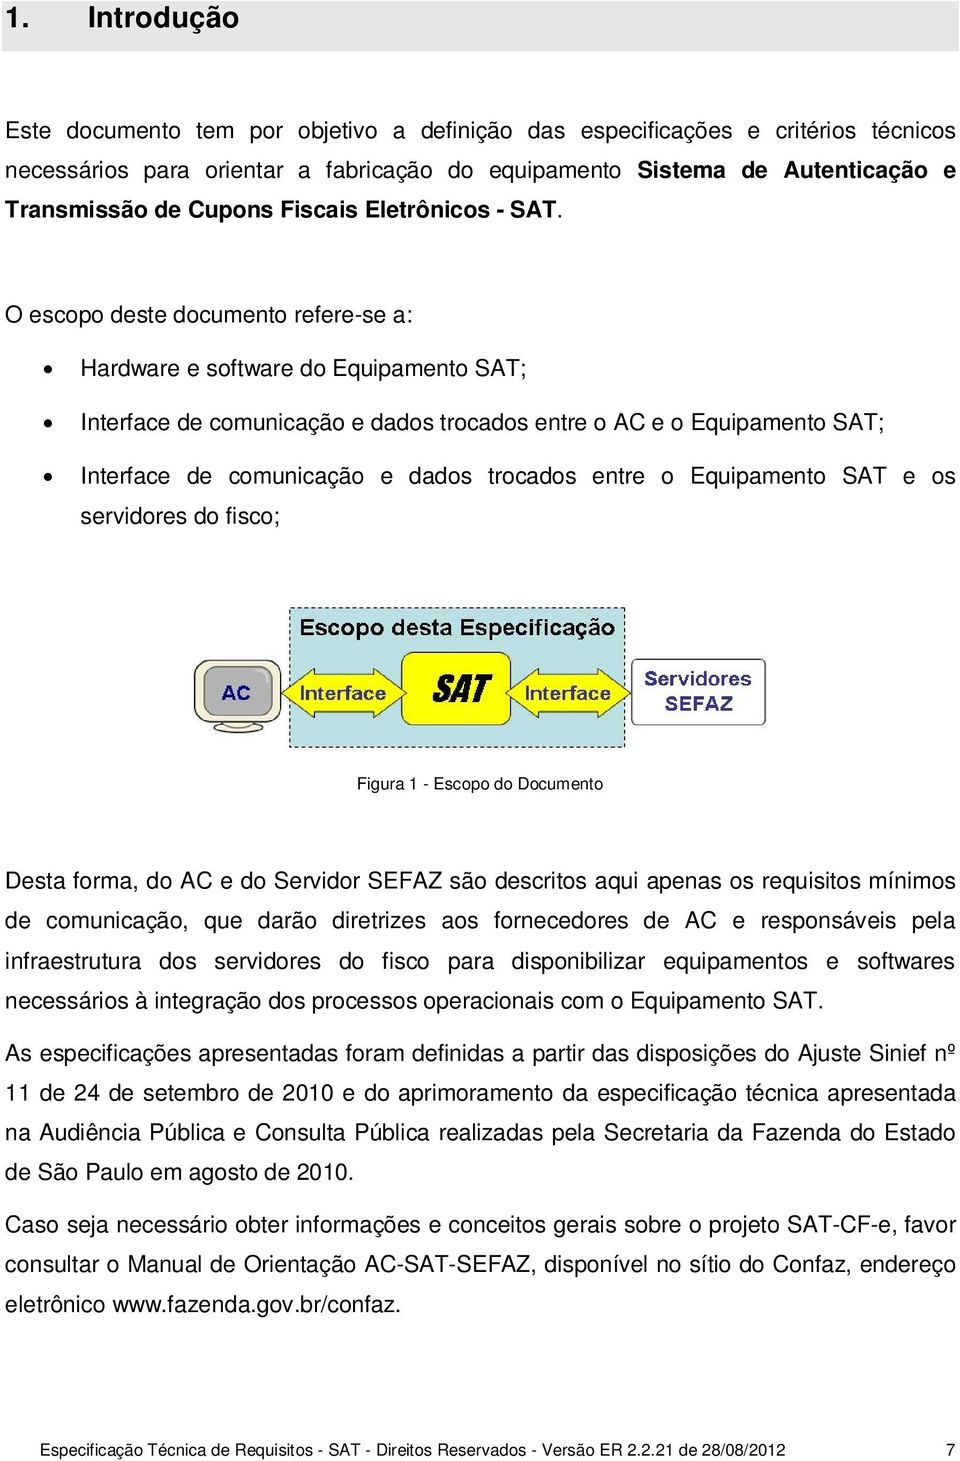 O escopo deste documento refere-se a: Hardware e software do Equipamento SAT; Interface de comunicação e dados trocados entre o AC e o Equipamento SAT; Interface de comunicação e dados trocados entre